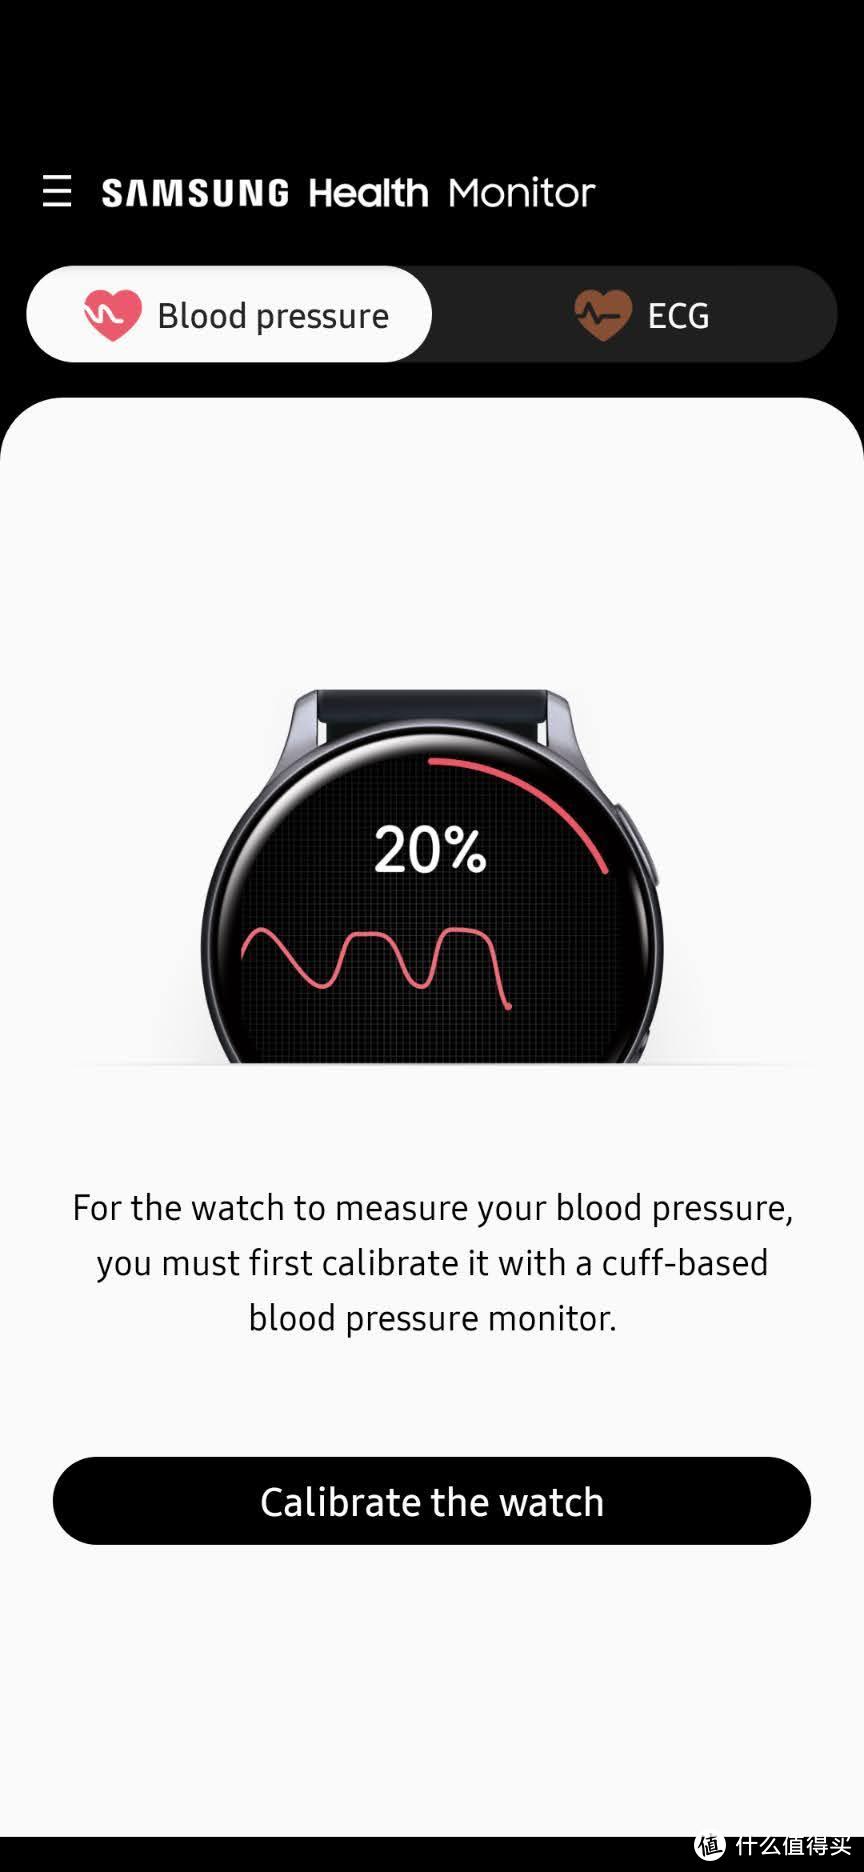 血压测量，第一次需要用血压计校准